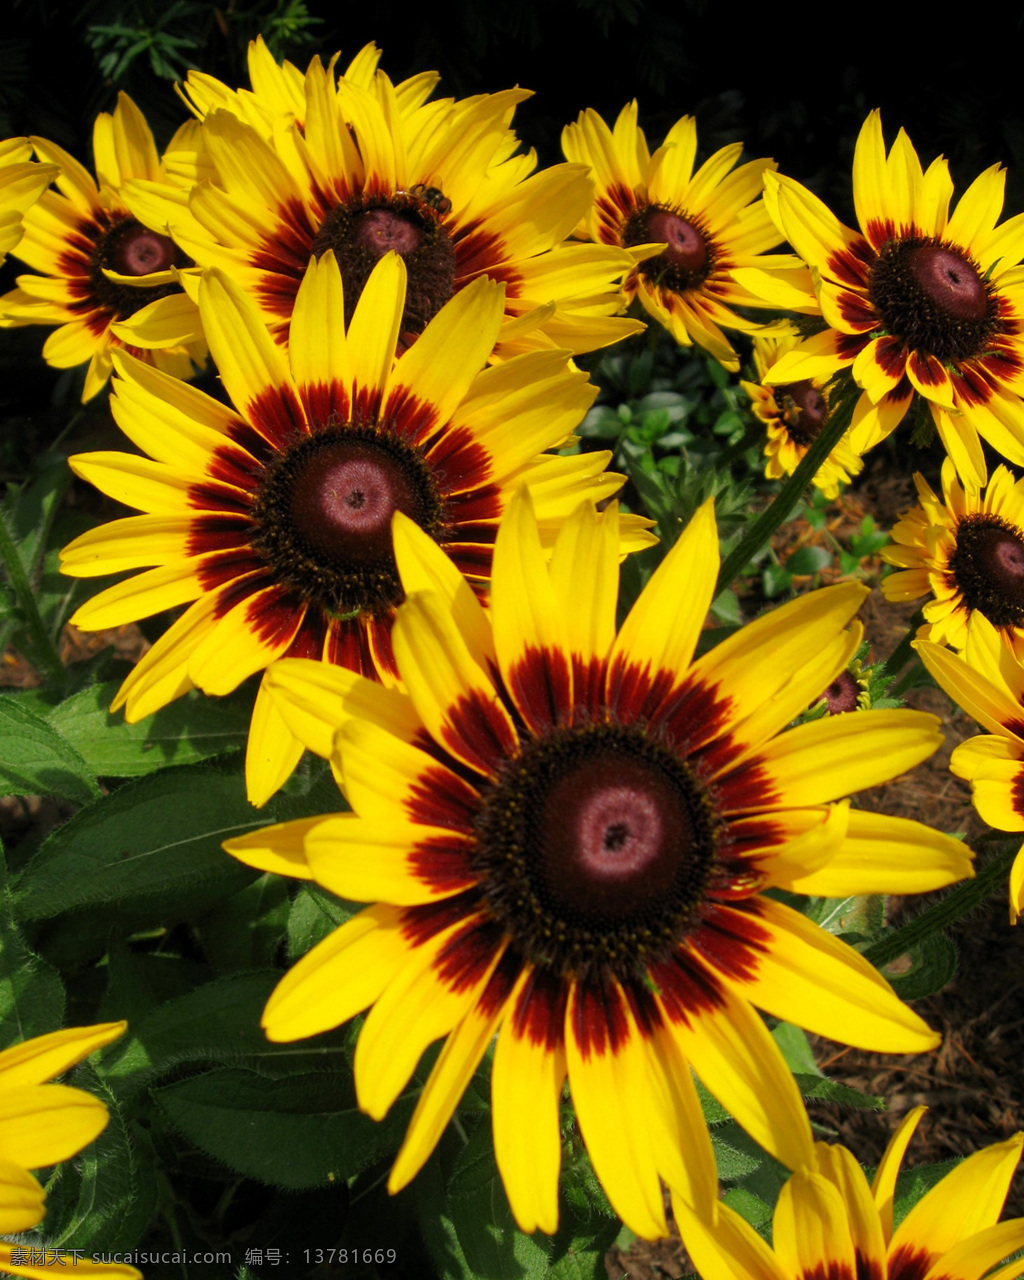 位图 植物摄影 写实花卉 花朵 向日葵 免费素材 面料图库 服装图案 黑色